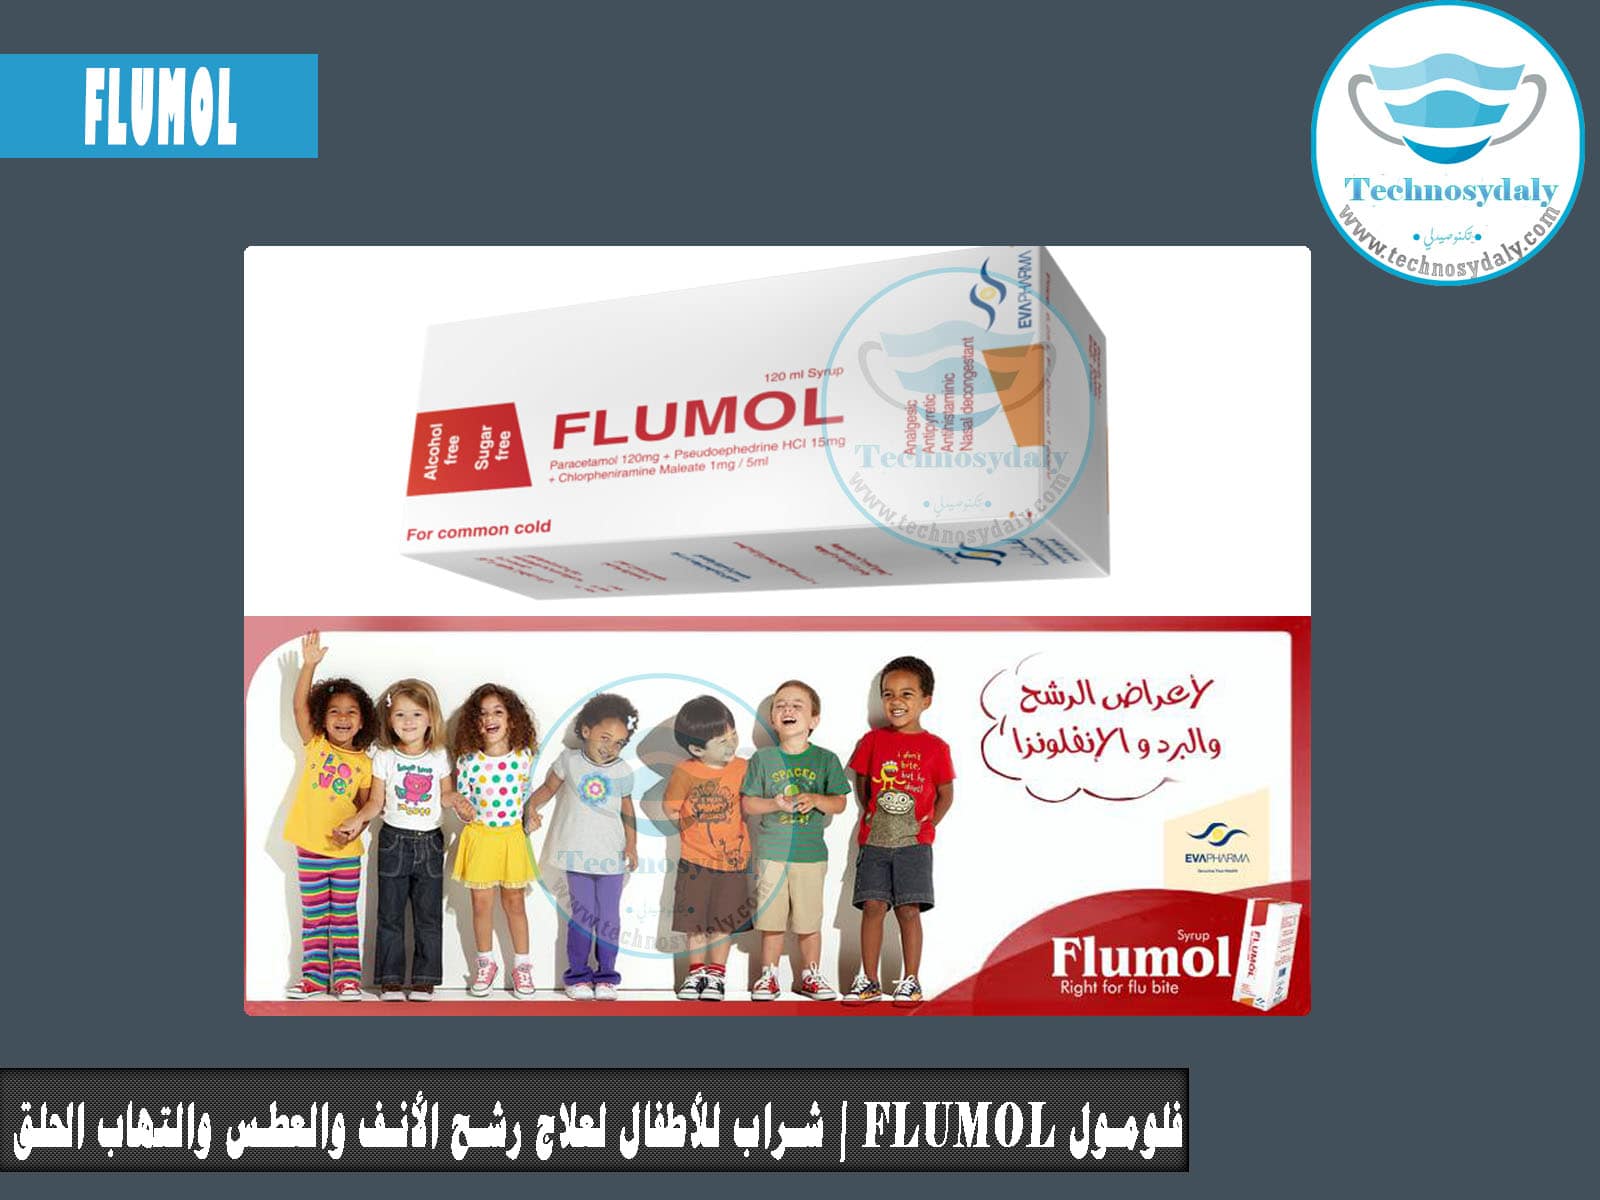 فلومول Flumol